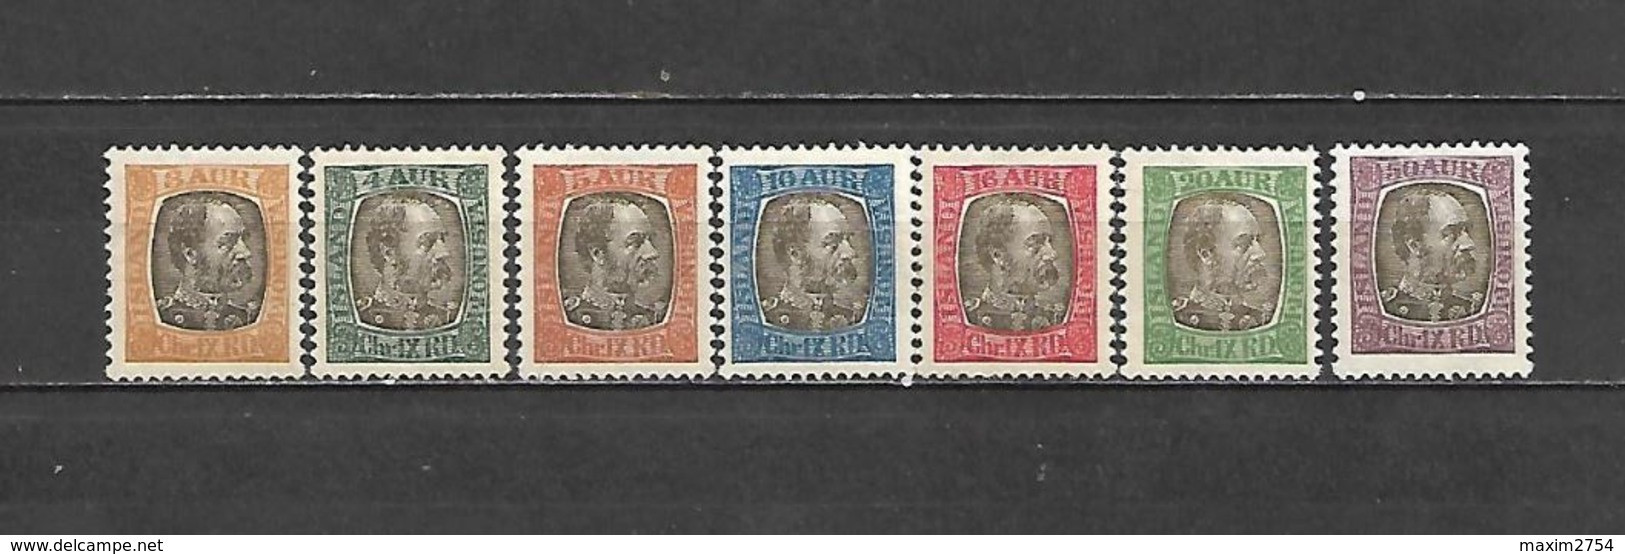 1902 - FRANCOBOLLI DI SERVIZIO N. 17/23* (CATALOGO UNIFICATO) - Unused Stamps